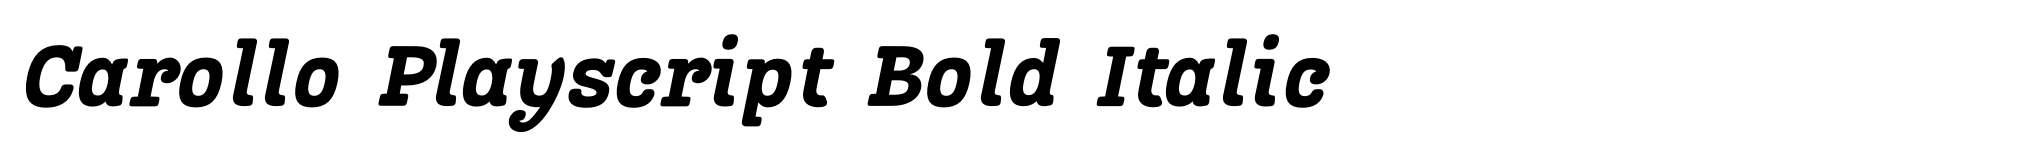 Carollo Playscript Bold Italic image